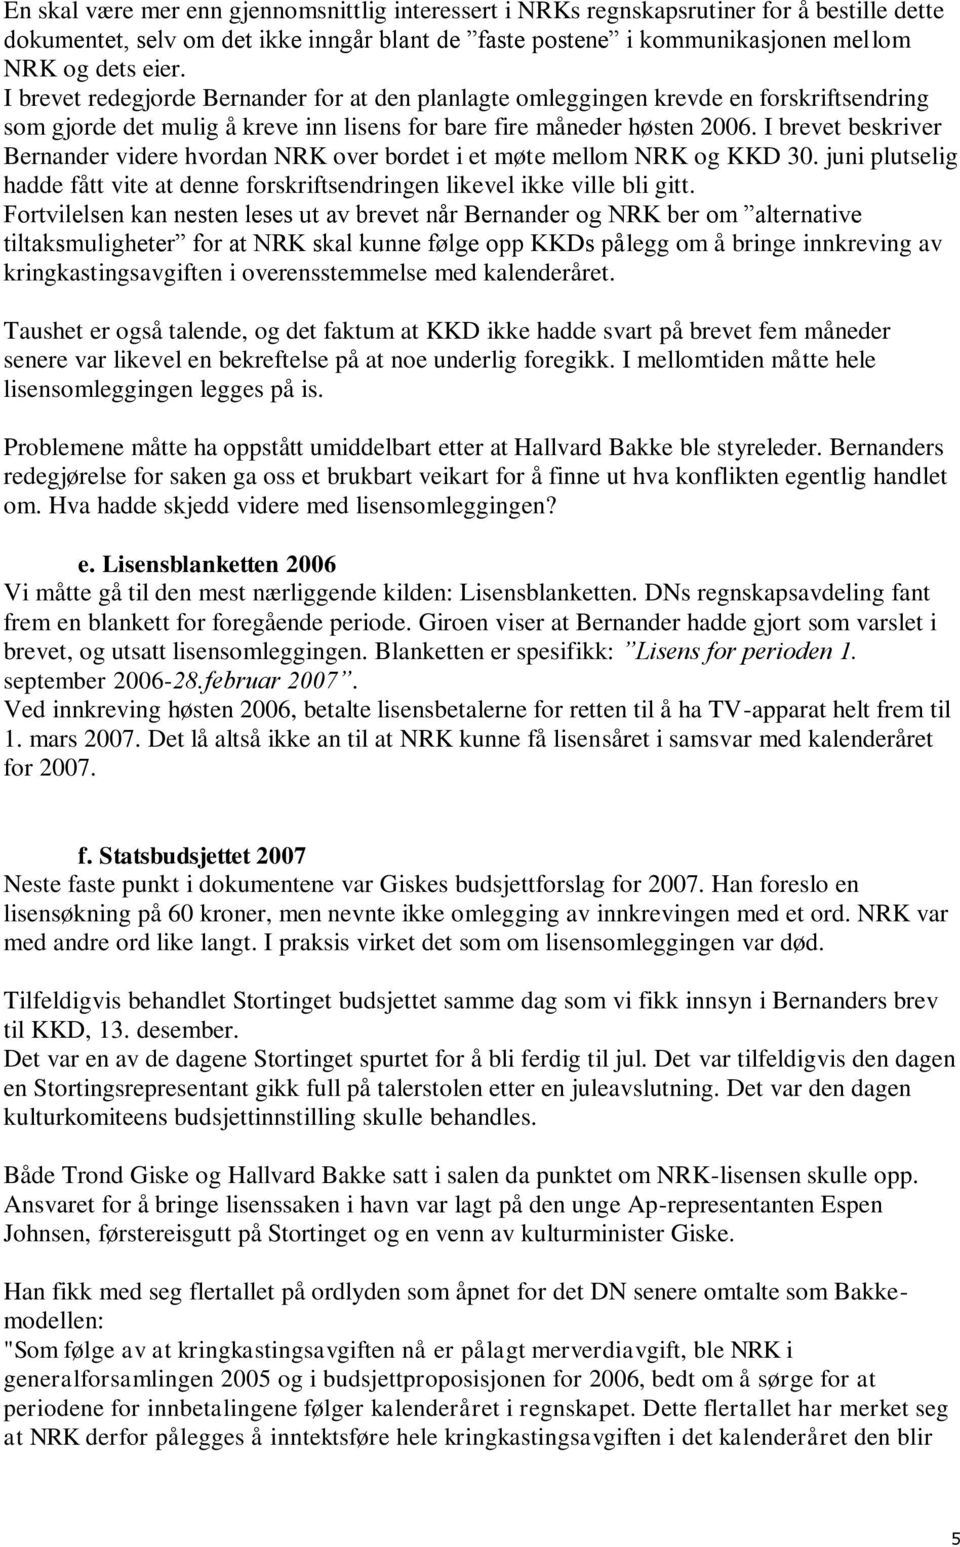 I brevet beskriver Bernander videre hvordan NRK over bordet i et møte mellom NRK og KKD 30. juni plutselig hadde fått vite at denne forskriftsendringen likevel ikke ville bli gitt.